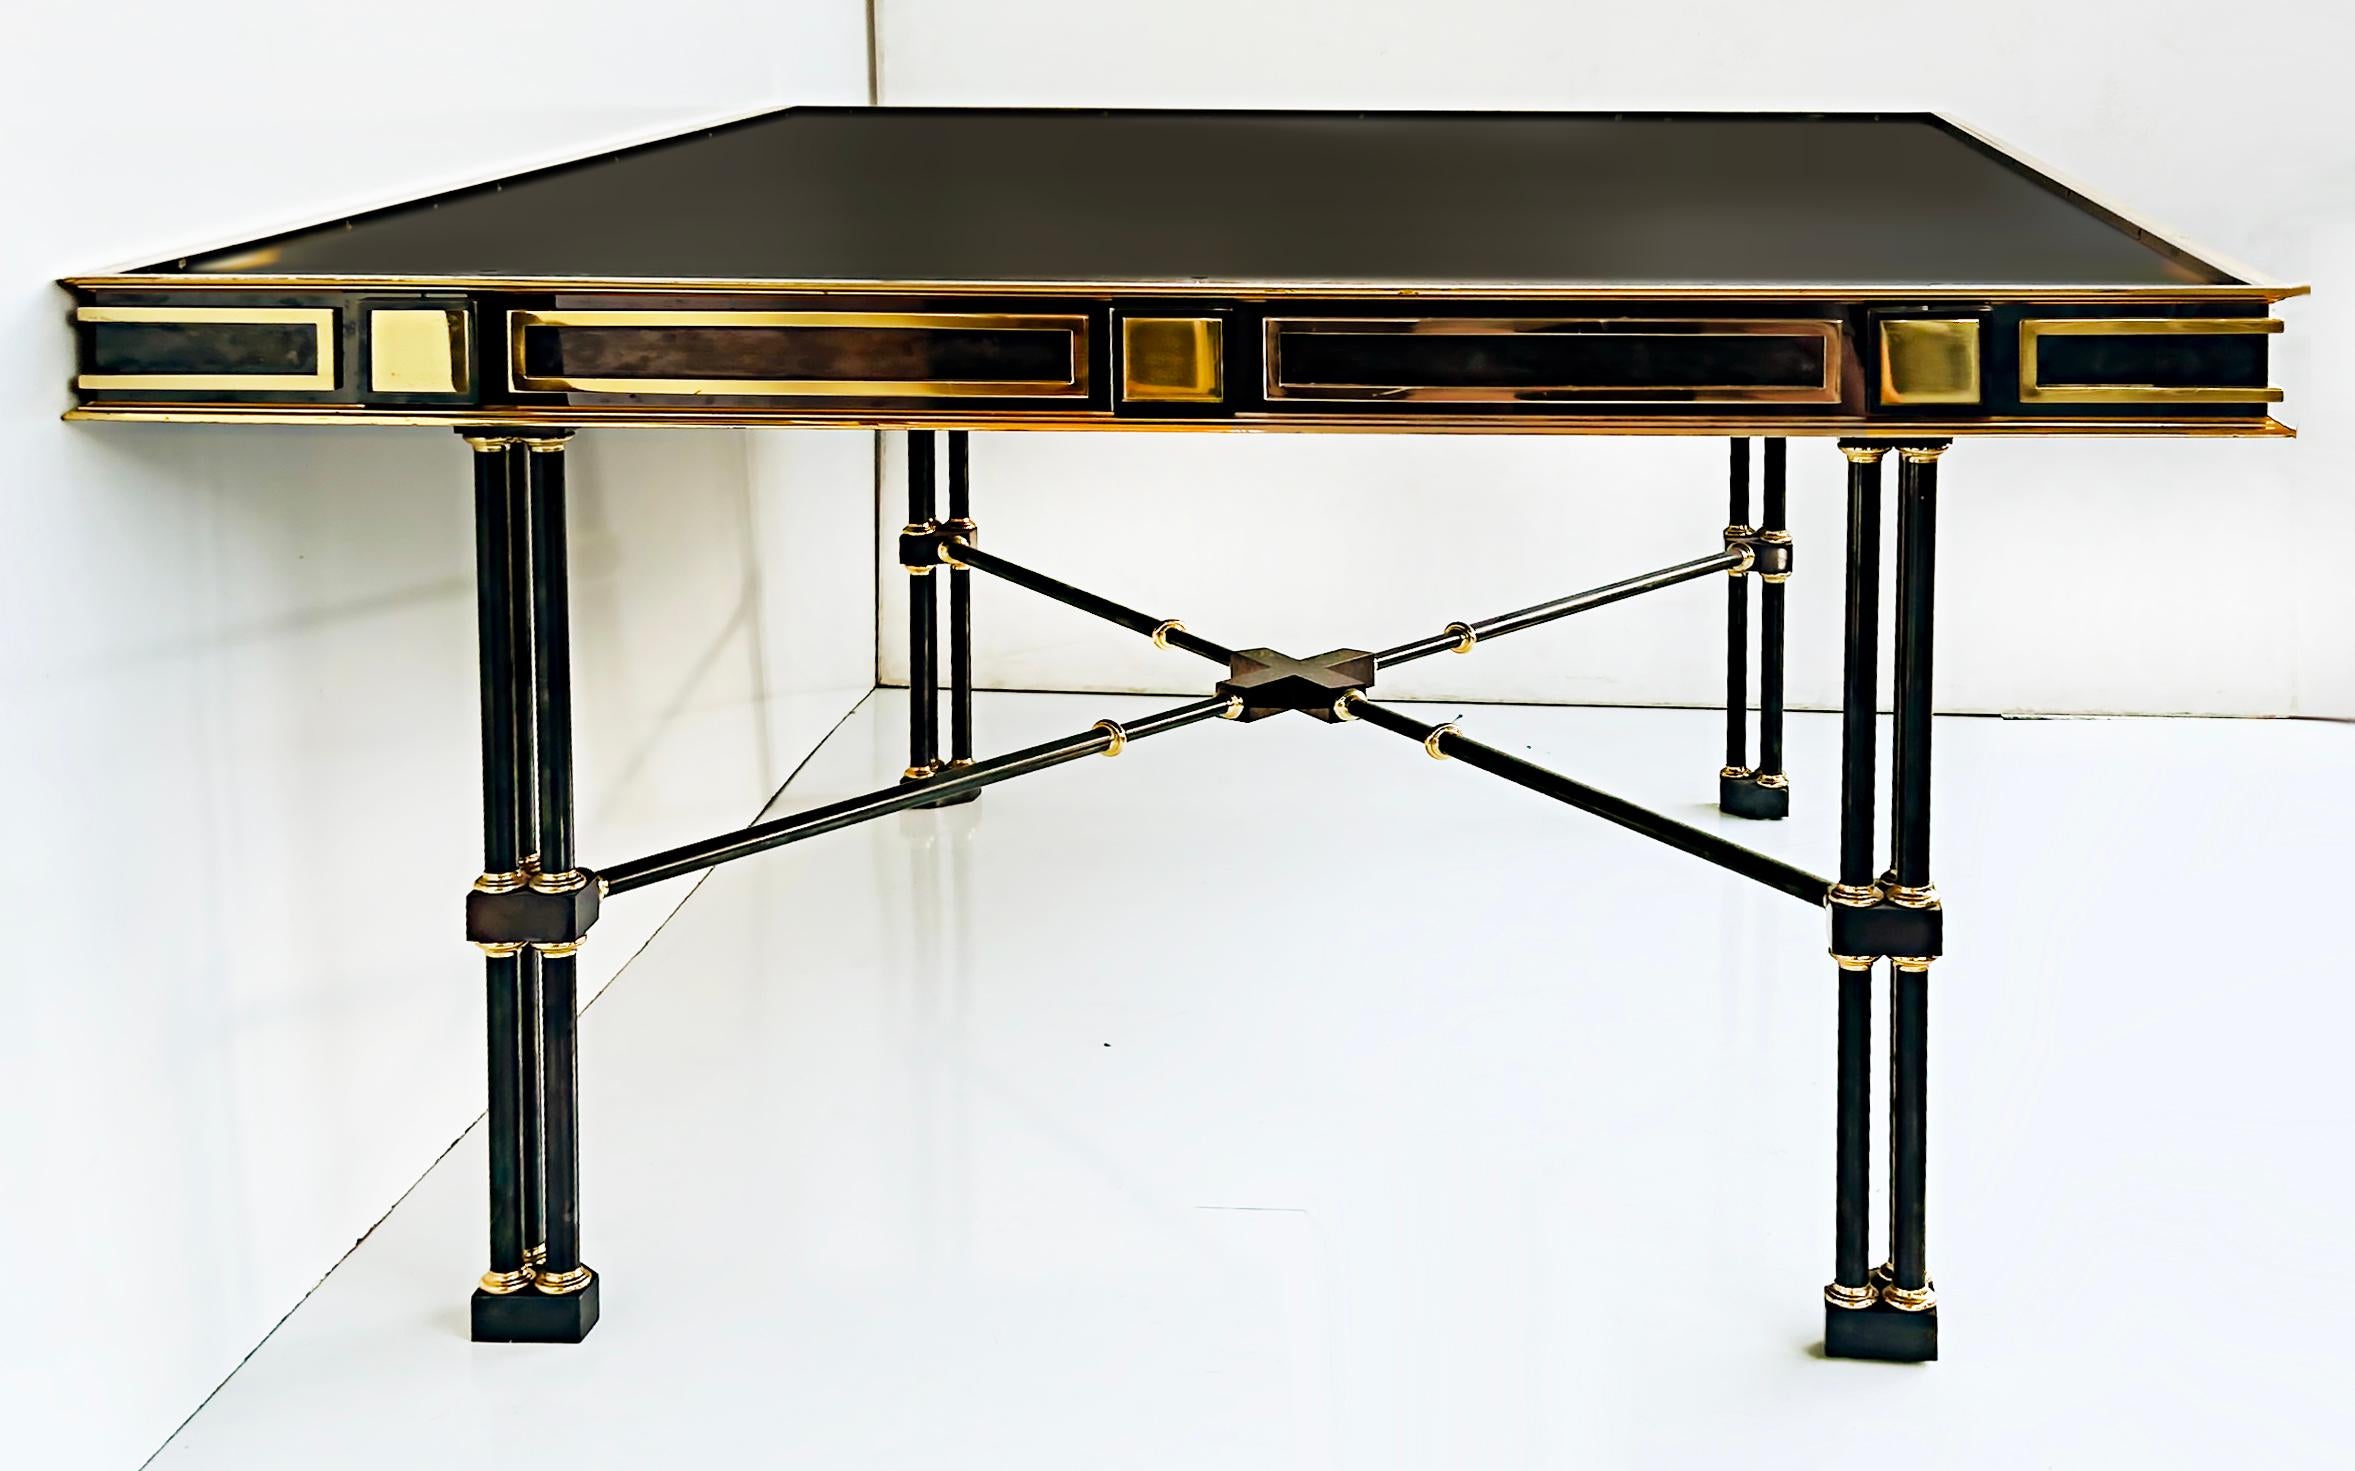 Vintage Ron Seff Bemerkenswerter Tisch aus Rotguss-Metall, Bronze und Messing, 1980er Jahre

Zum Verkauf angeboten wird eine sehr schwere erhebliche Tabelle von Ron Seff in Rotguss und Messing. Der Tisch ist sehr elegant mit einem modernen